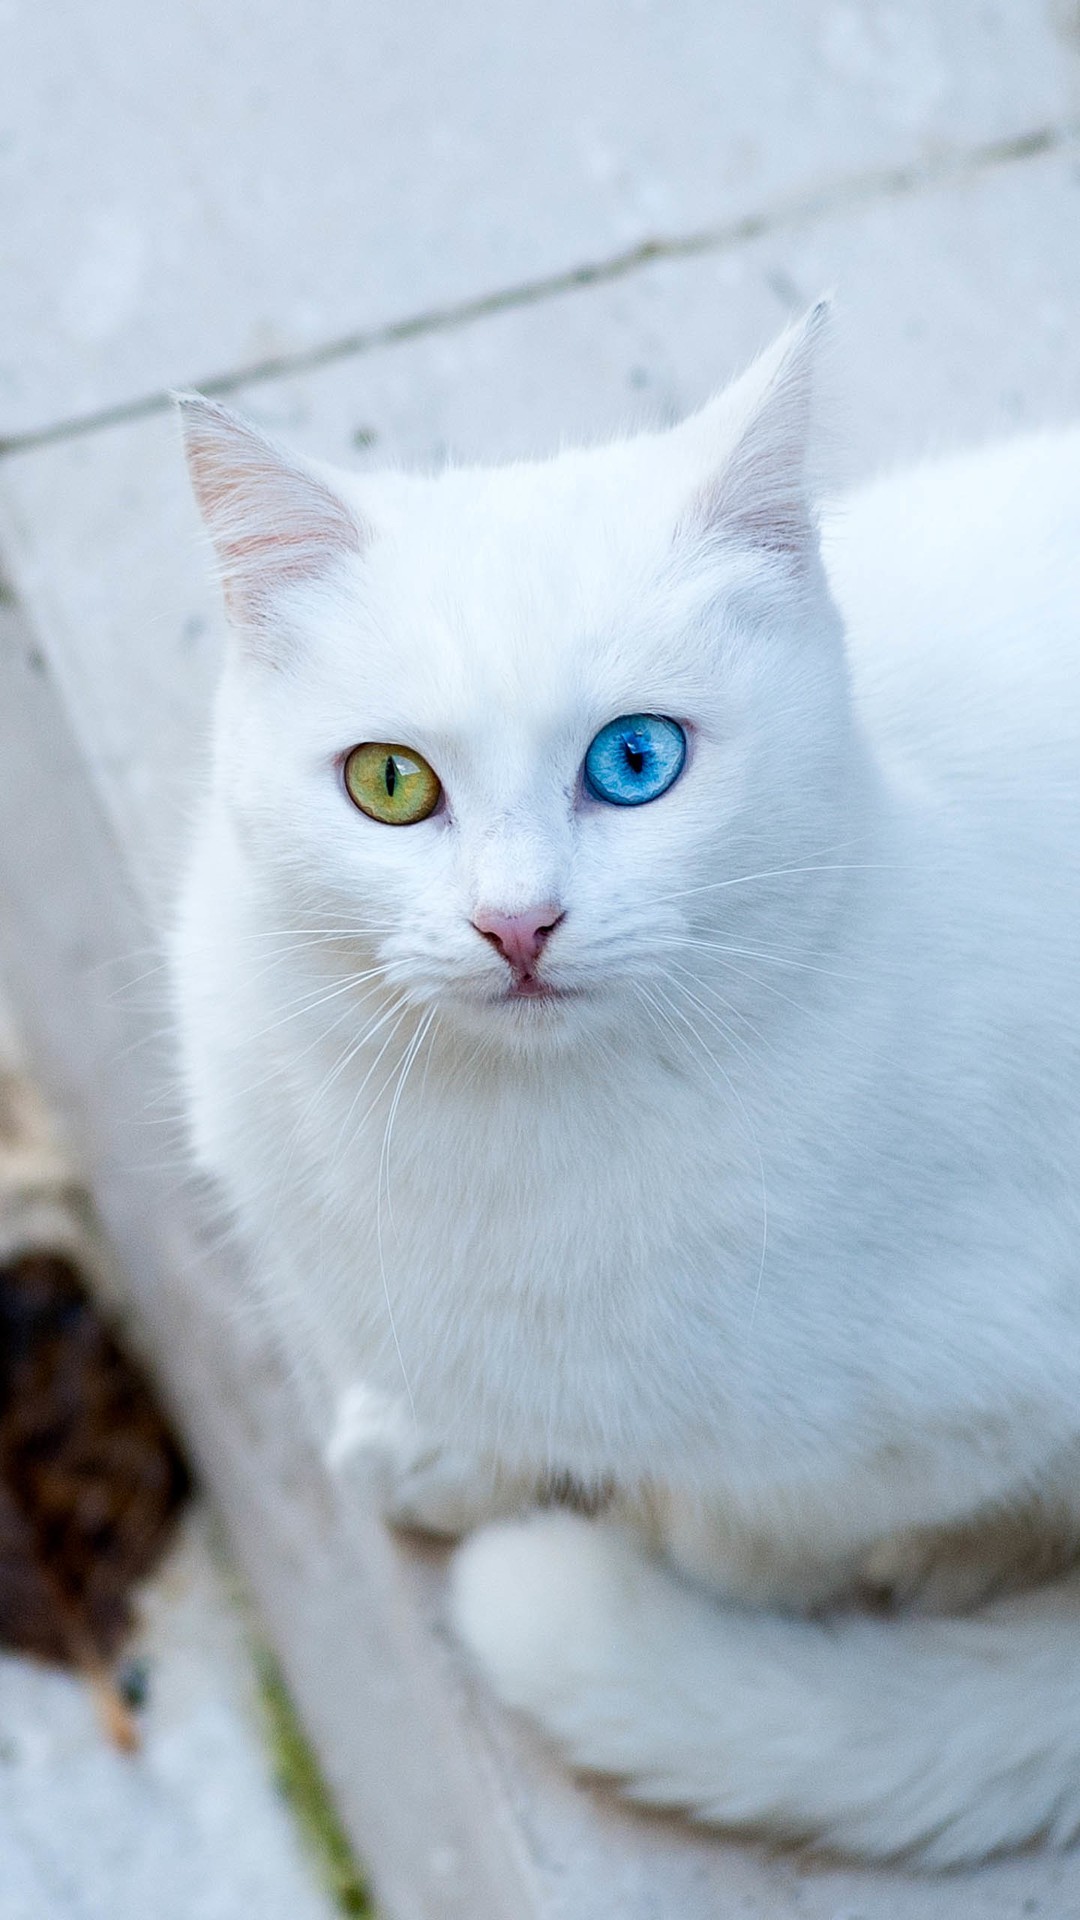 1080x1920 Cute white cat iPhone 7 wallpaper 10801920